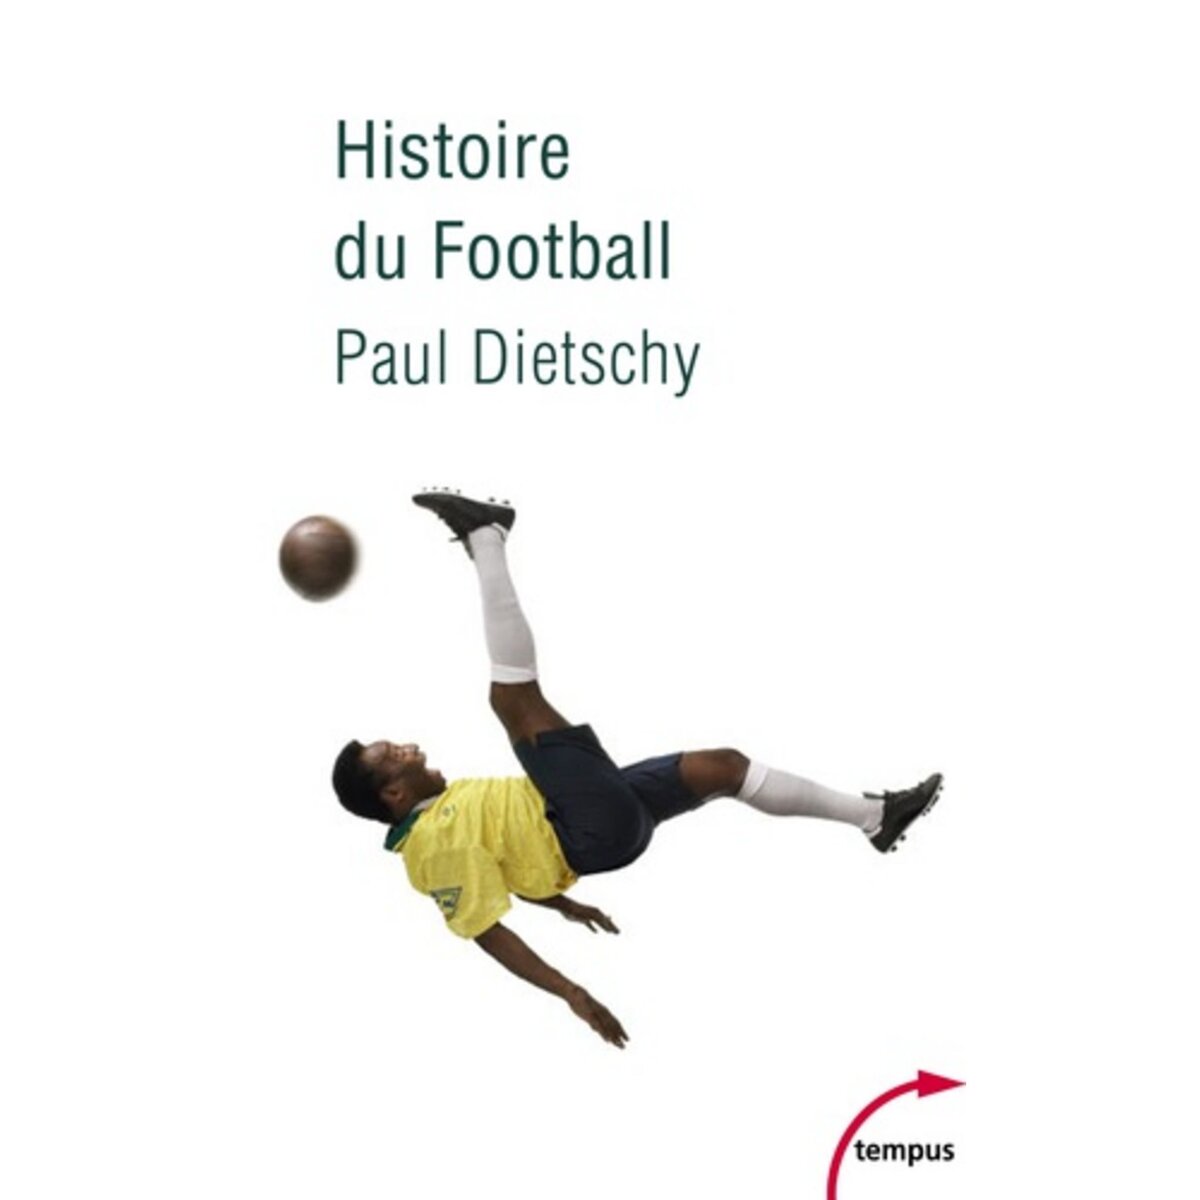  HISTOIRE DU FOOTBALL, Dietschy Paul